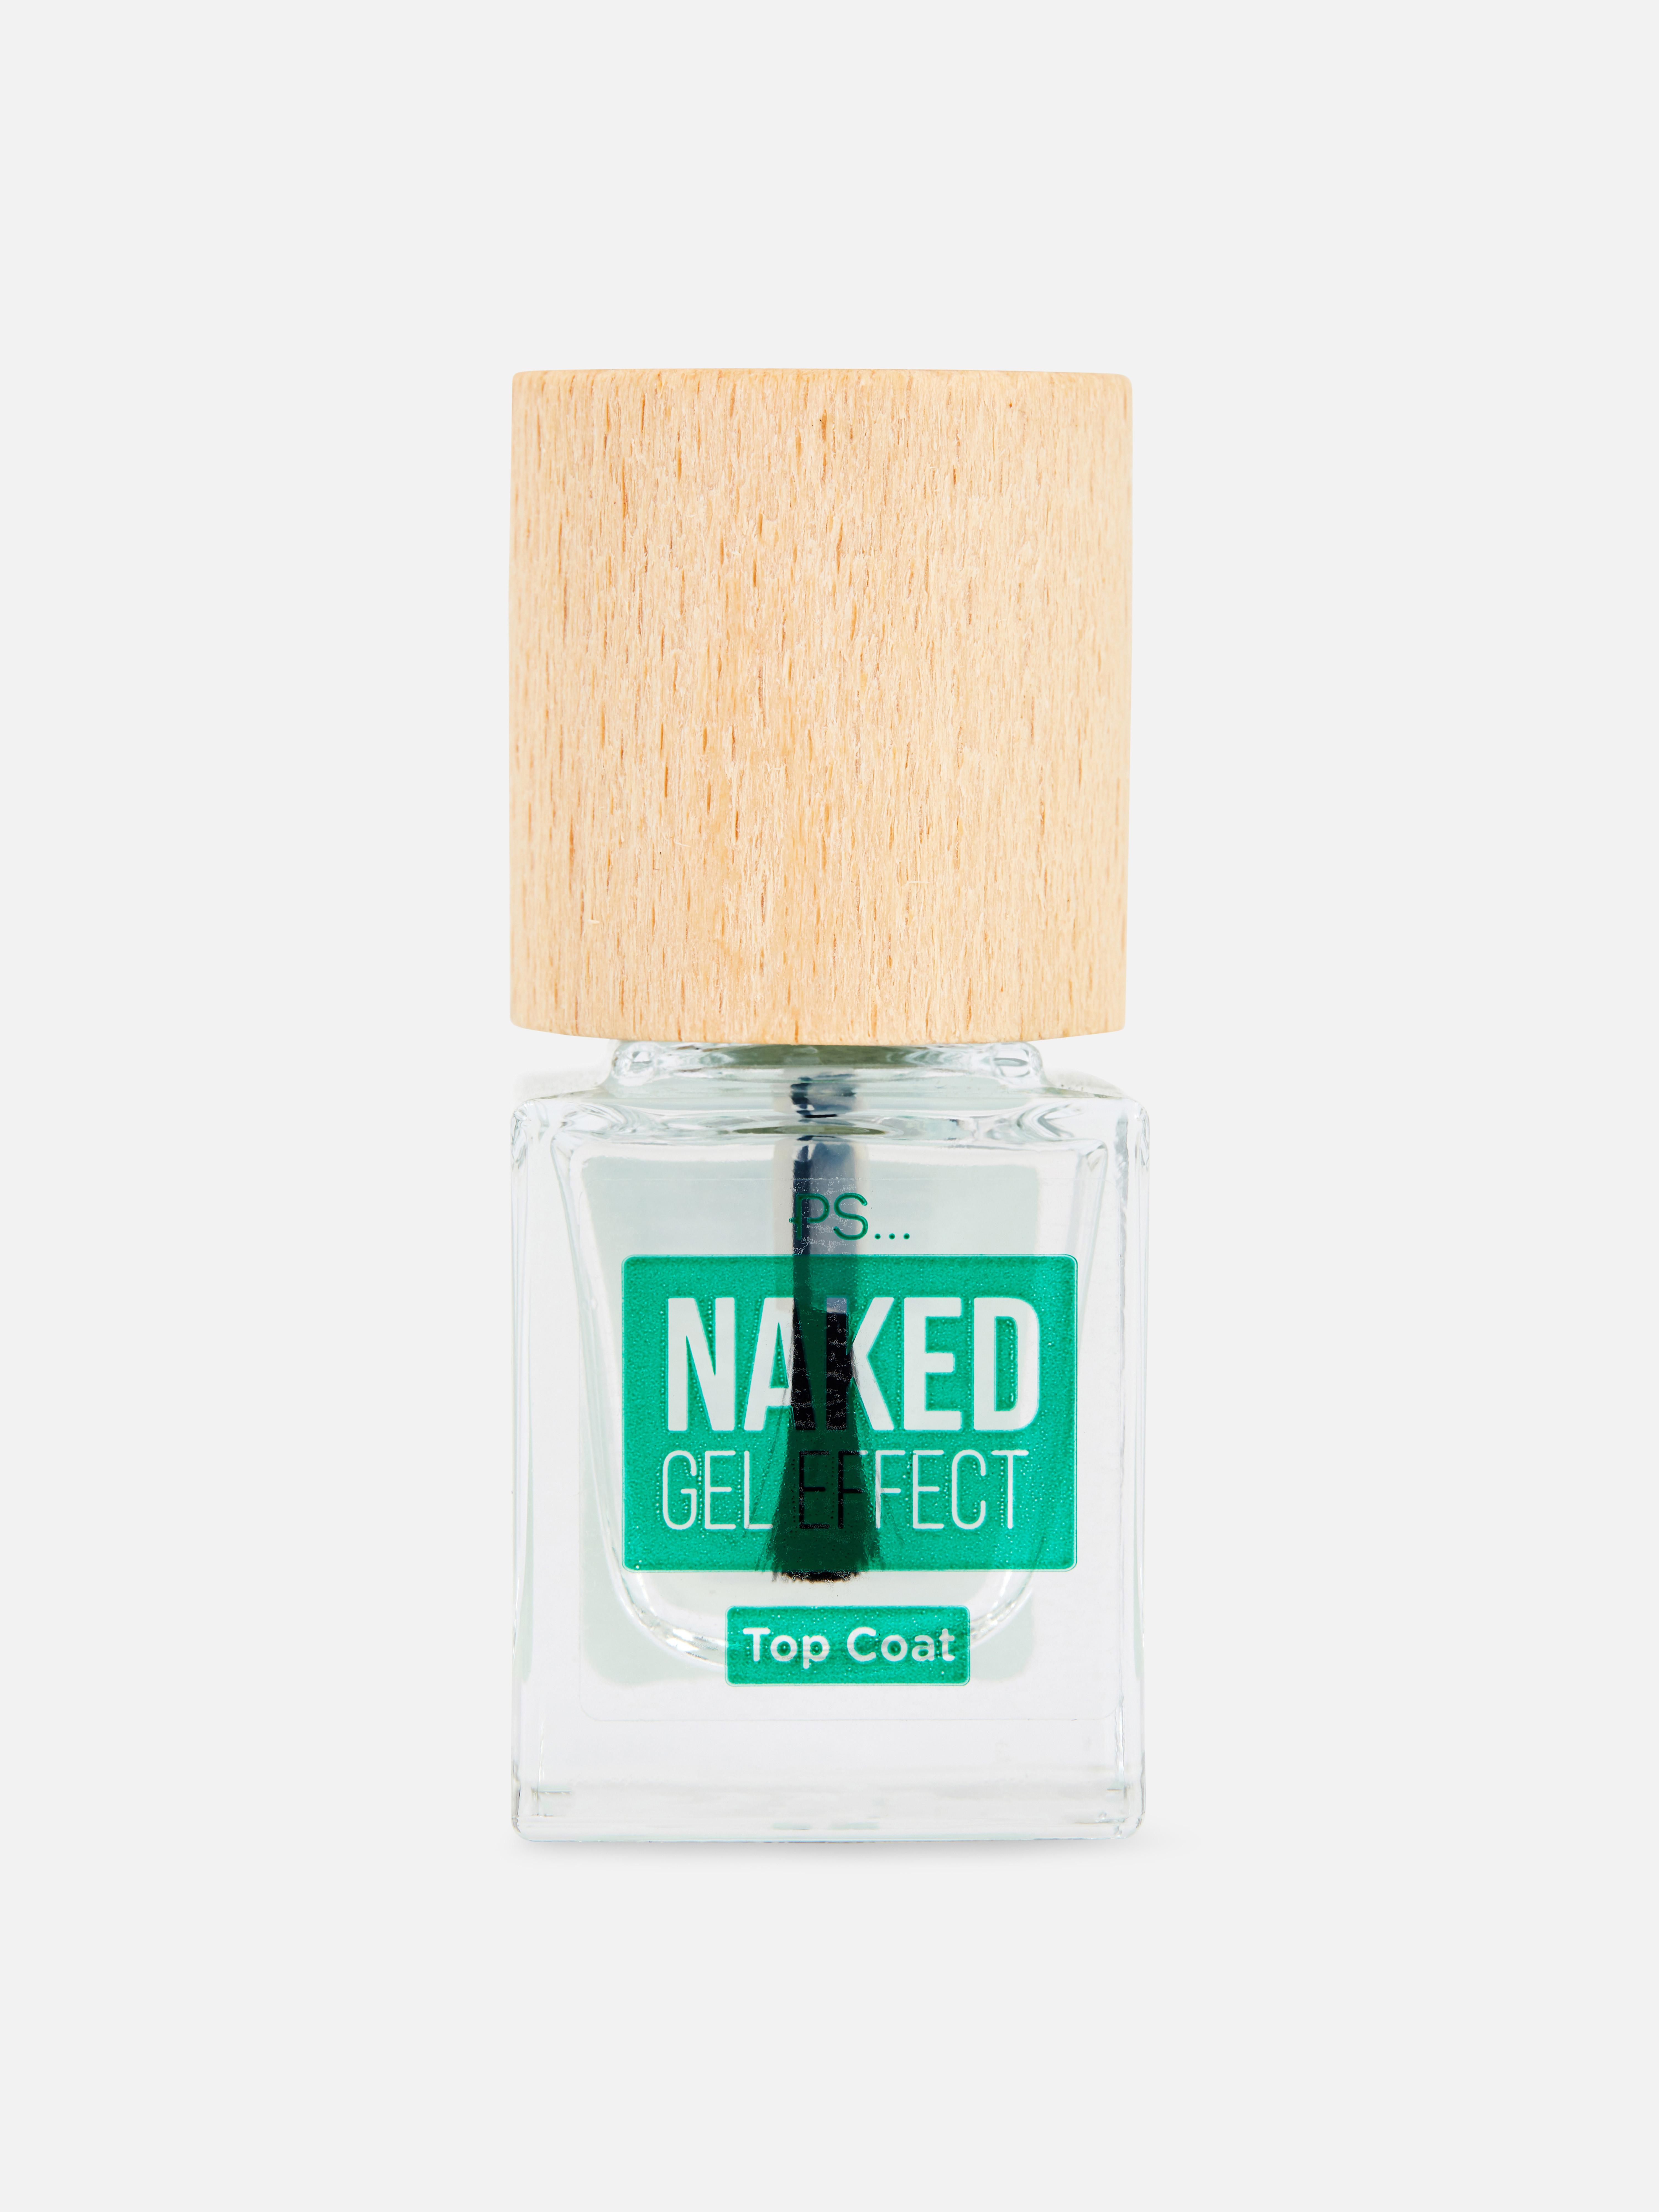 PS... Naked Gel Effect Nail Polish